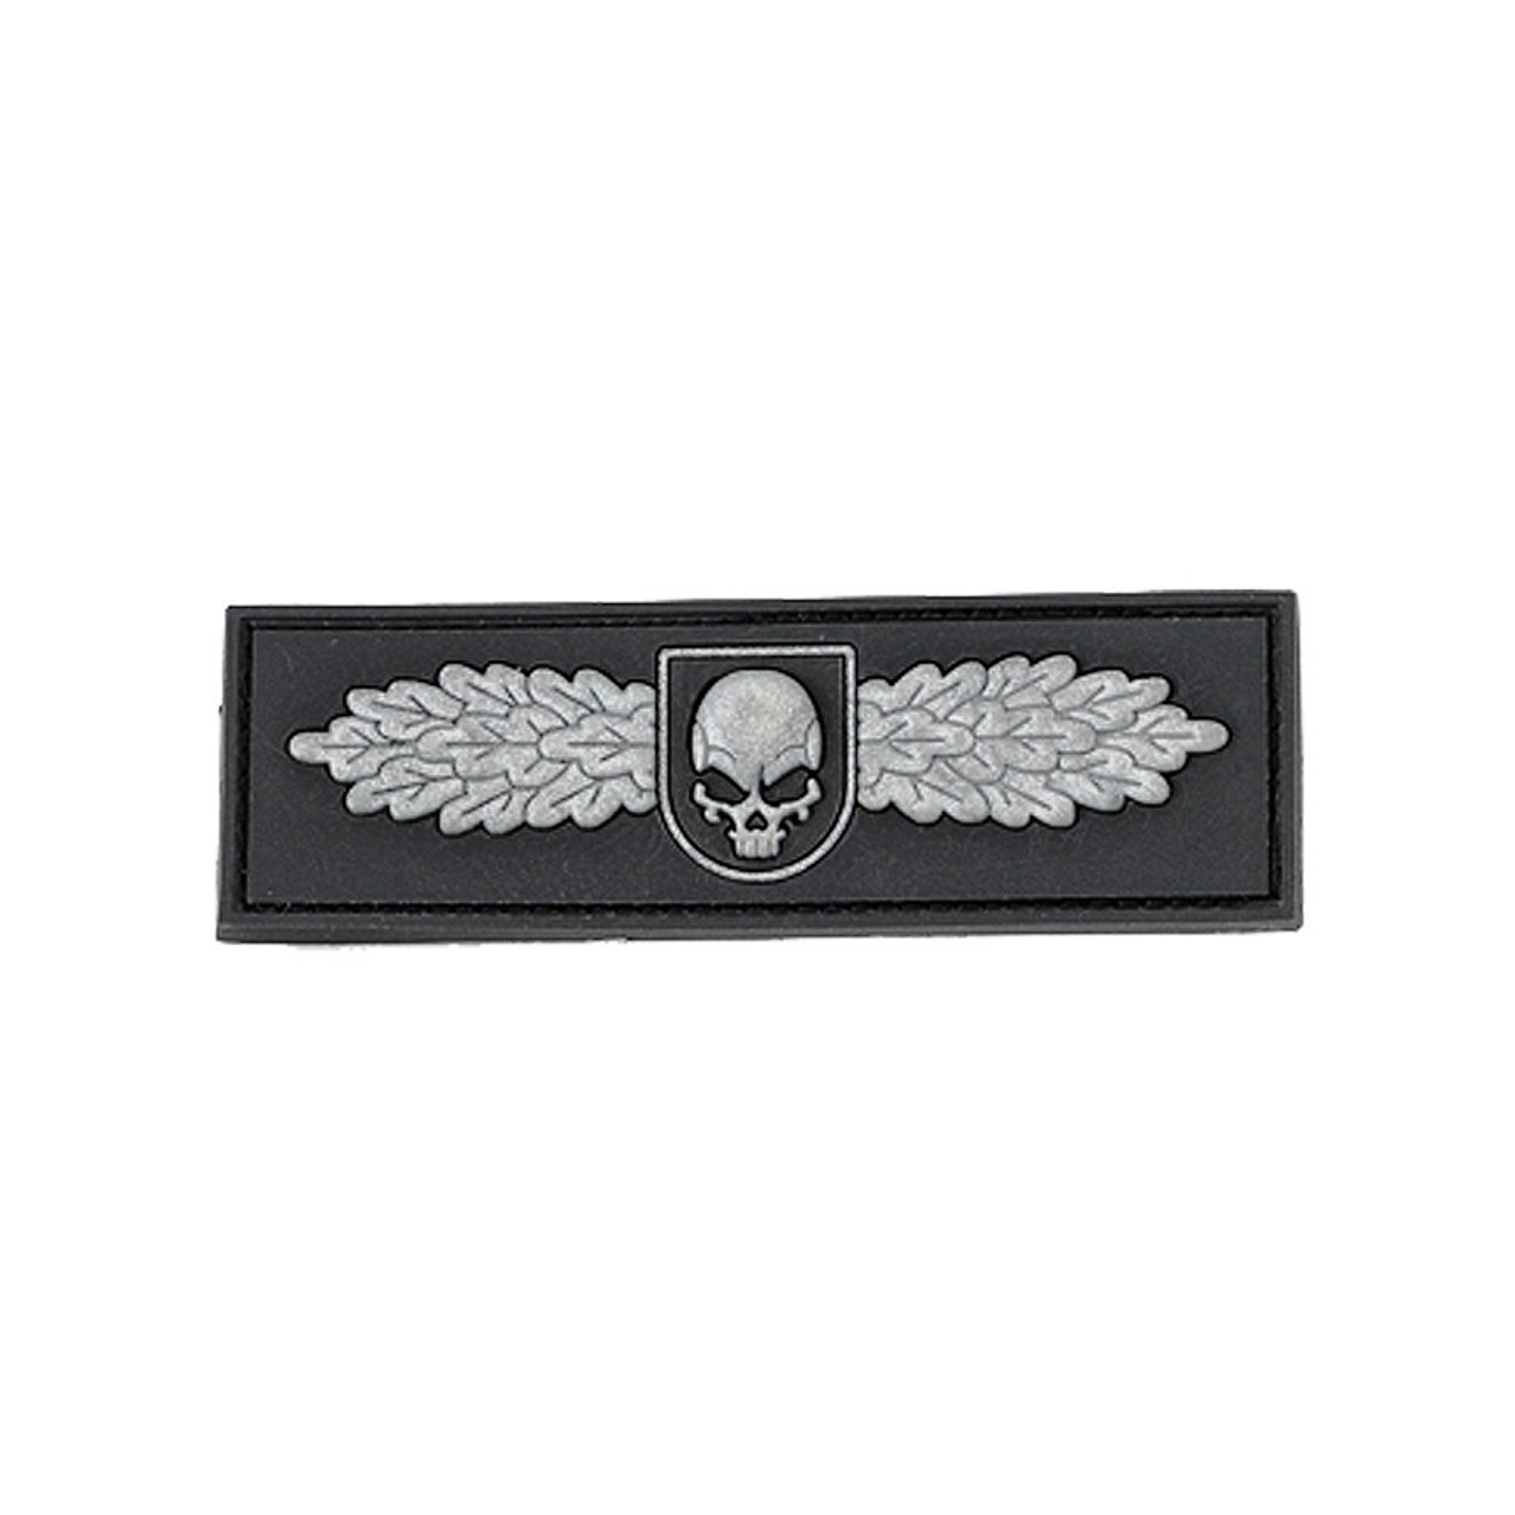 SOF Skull Badge PVC - Black/Grey - Morale Patch